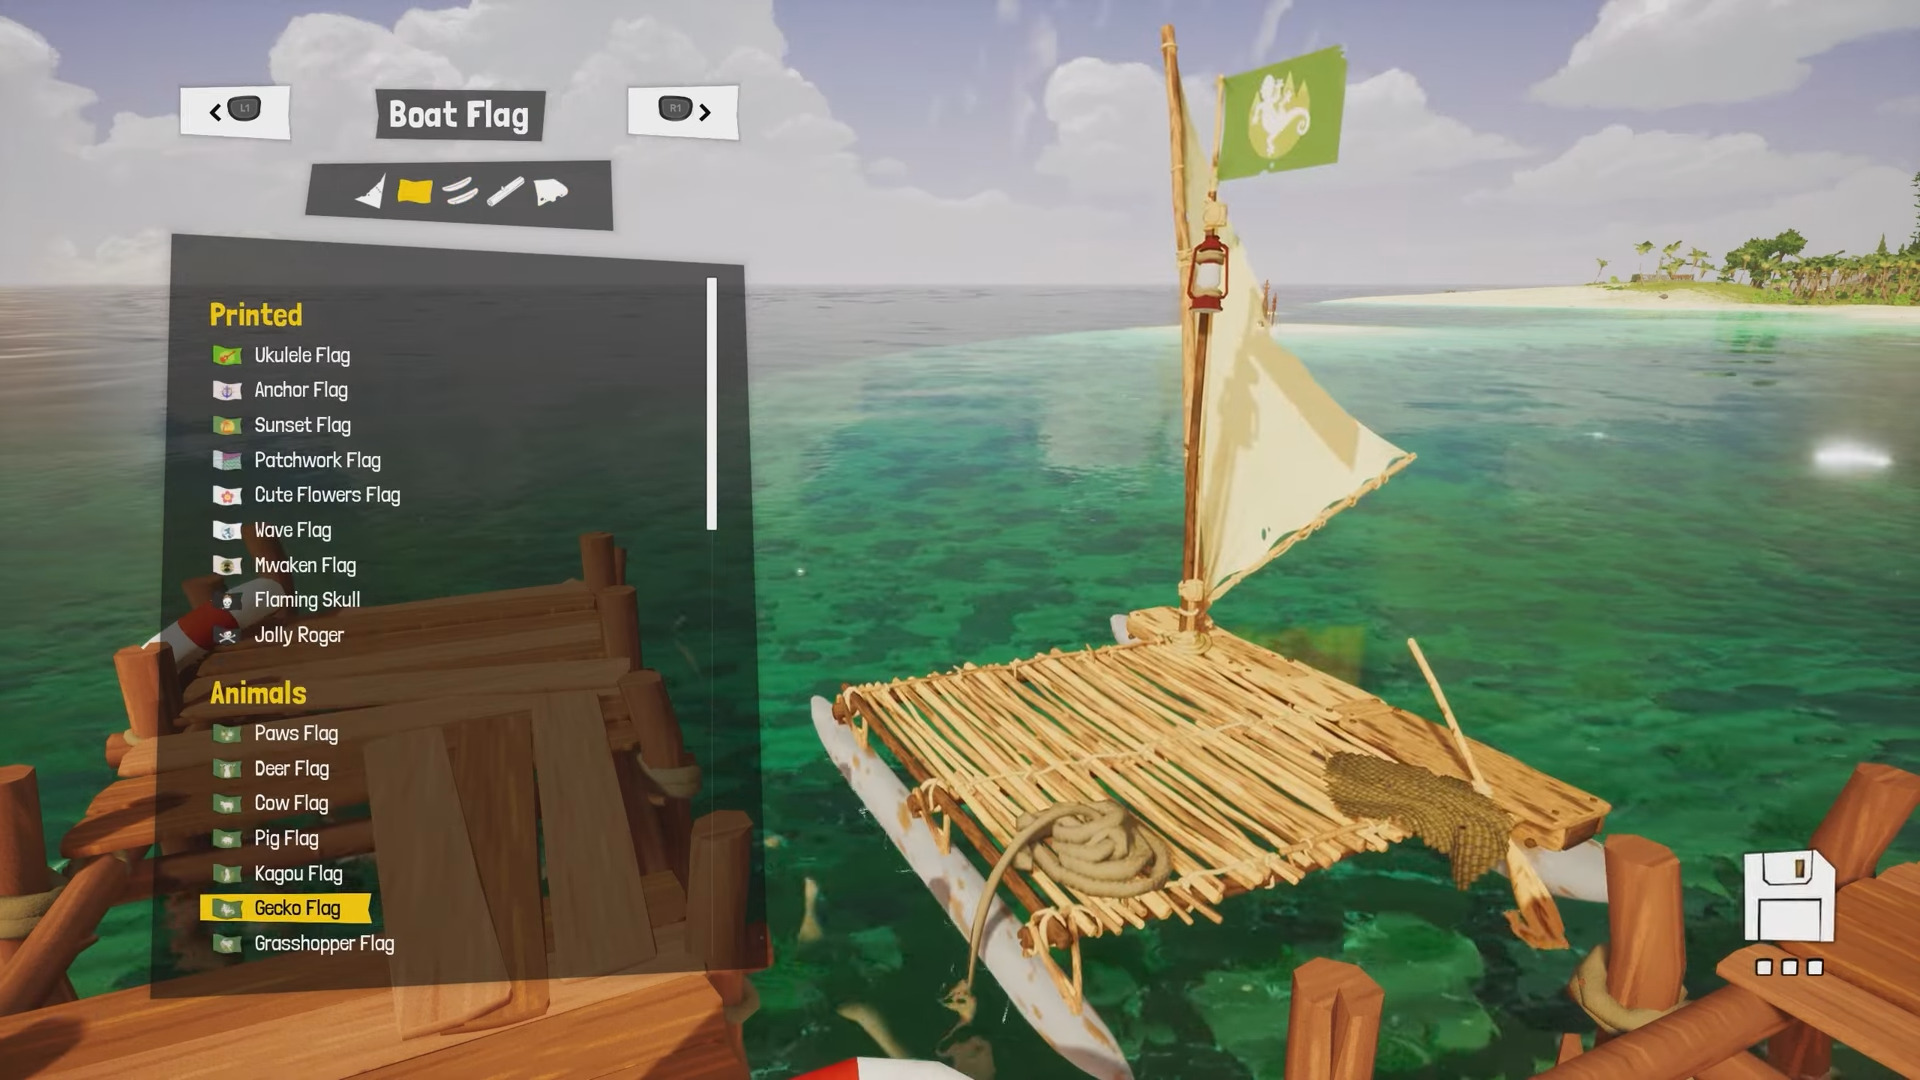 Awaceb ha parlato della personalizzazione del personaggio in Tchia. I giocatori potranno cercare abiti diversi, creare la propria barca e avere una macchina fotografica nel proprio arsenale. -11